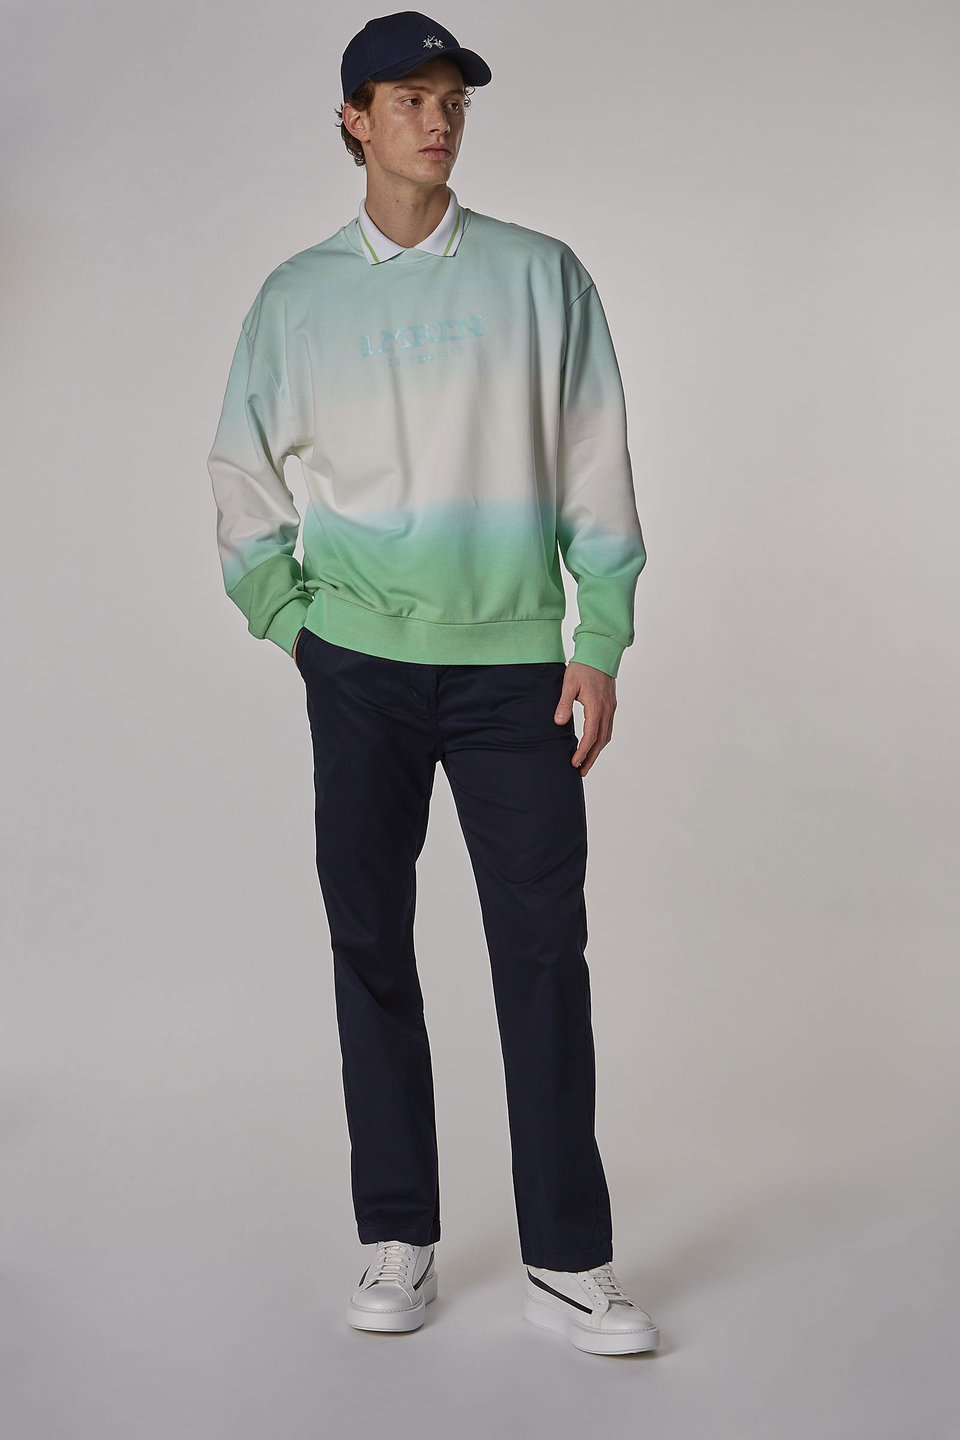 Herren-Sweatshirt aus 100 % Baumwolle mit Rundhalsausschnitt, oversized Modell | La Martina - Official Online Shop